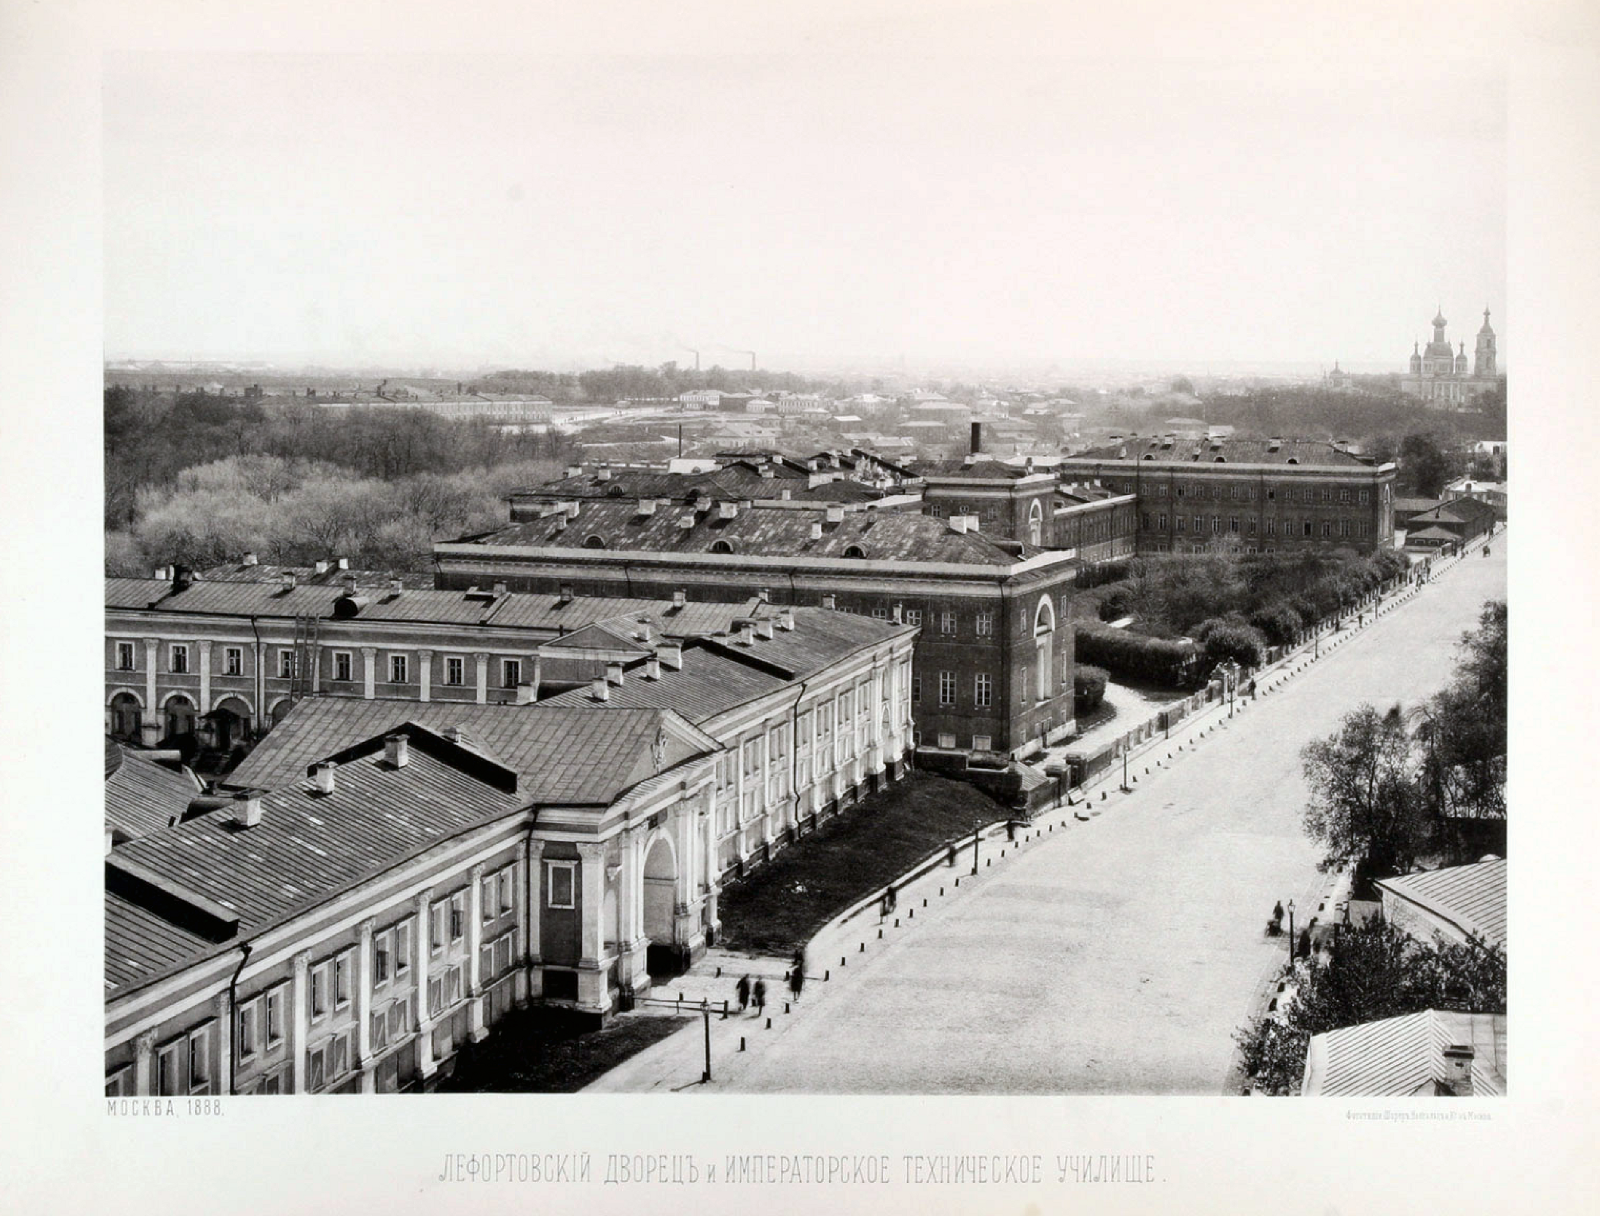 Вид Лефортовского дворца и Императорского Московского технического училища (Слободской дворец), 1888 год.